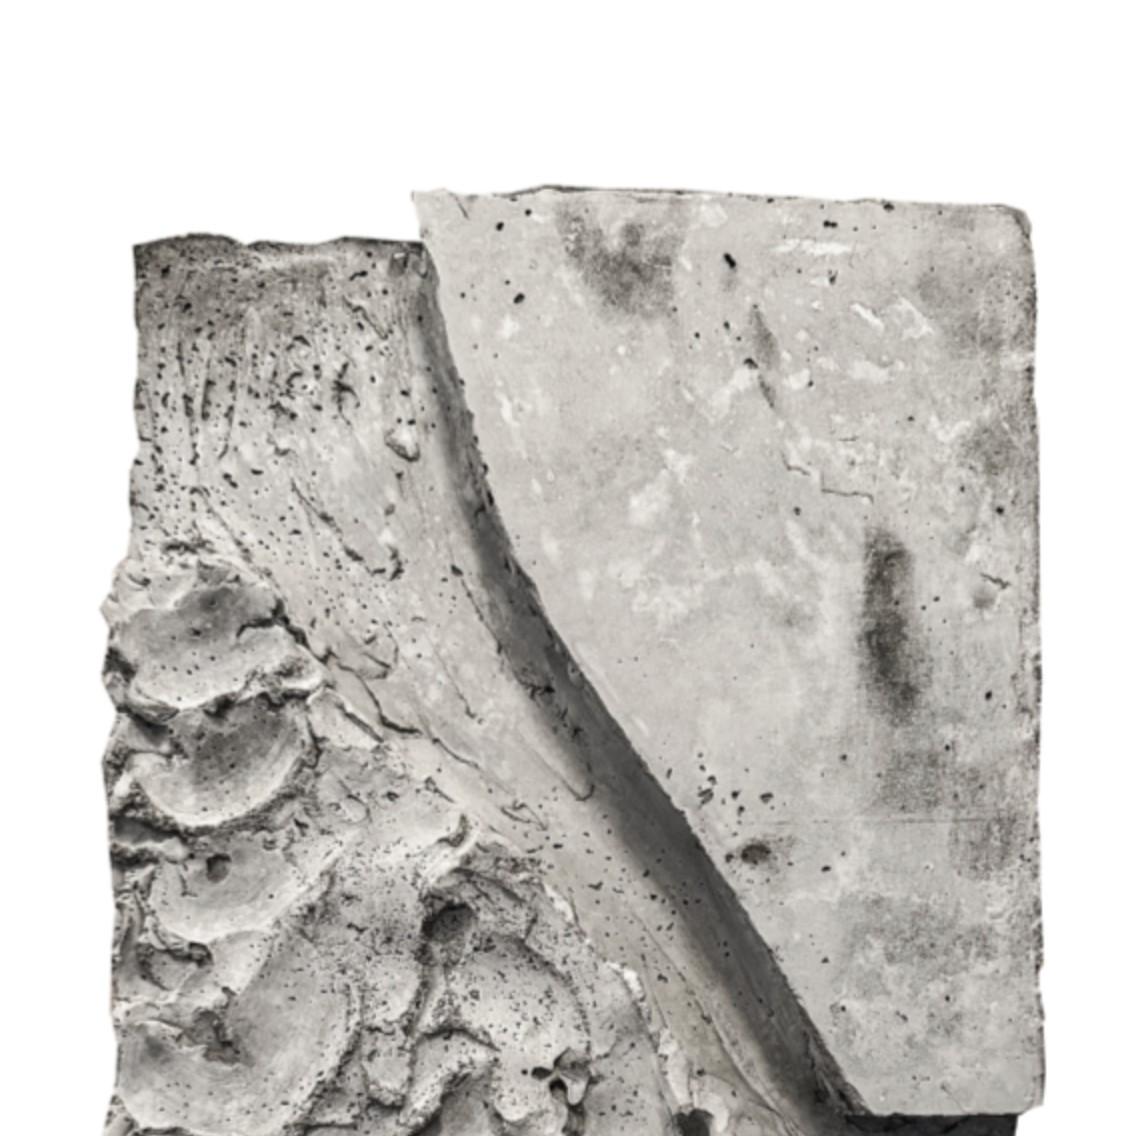 Reliefskulptur von Alexandra Madirazza
Abmessungen: B 60 x T 3 x H 90 cm (Dies sind ungefähre Maße)
MATERIALIEN: Beton

Alexandra ist Architektin, hat sich aber in den letzten 5 Jahren mit dem Unternehmen Atelier selbständig gemacht.

Madirazza, wo